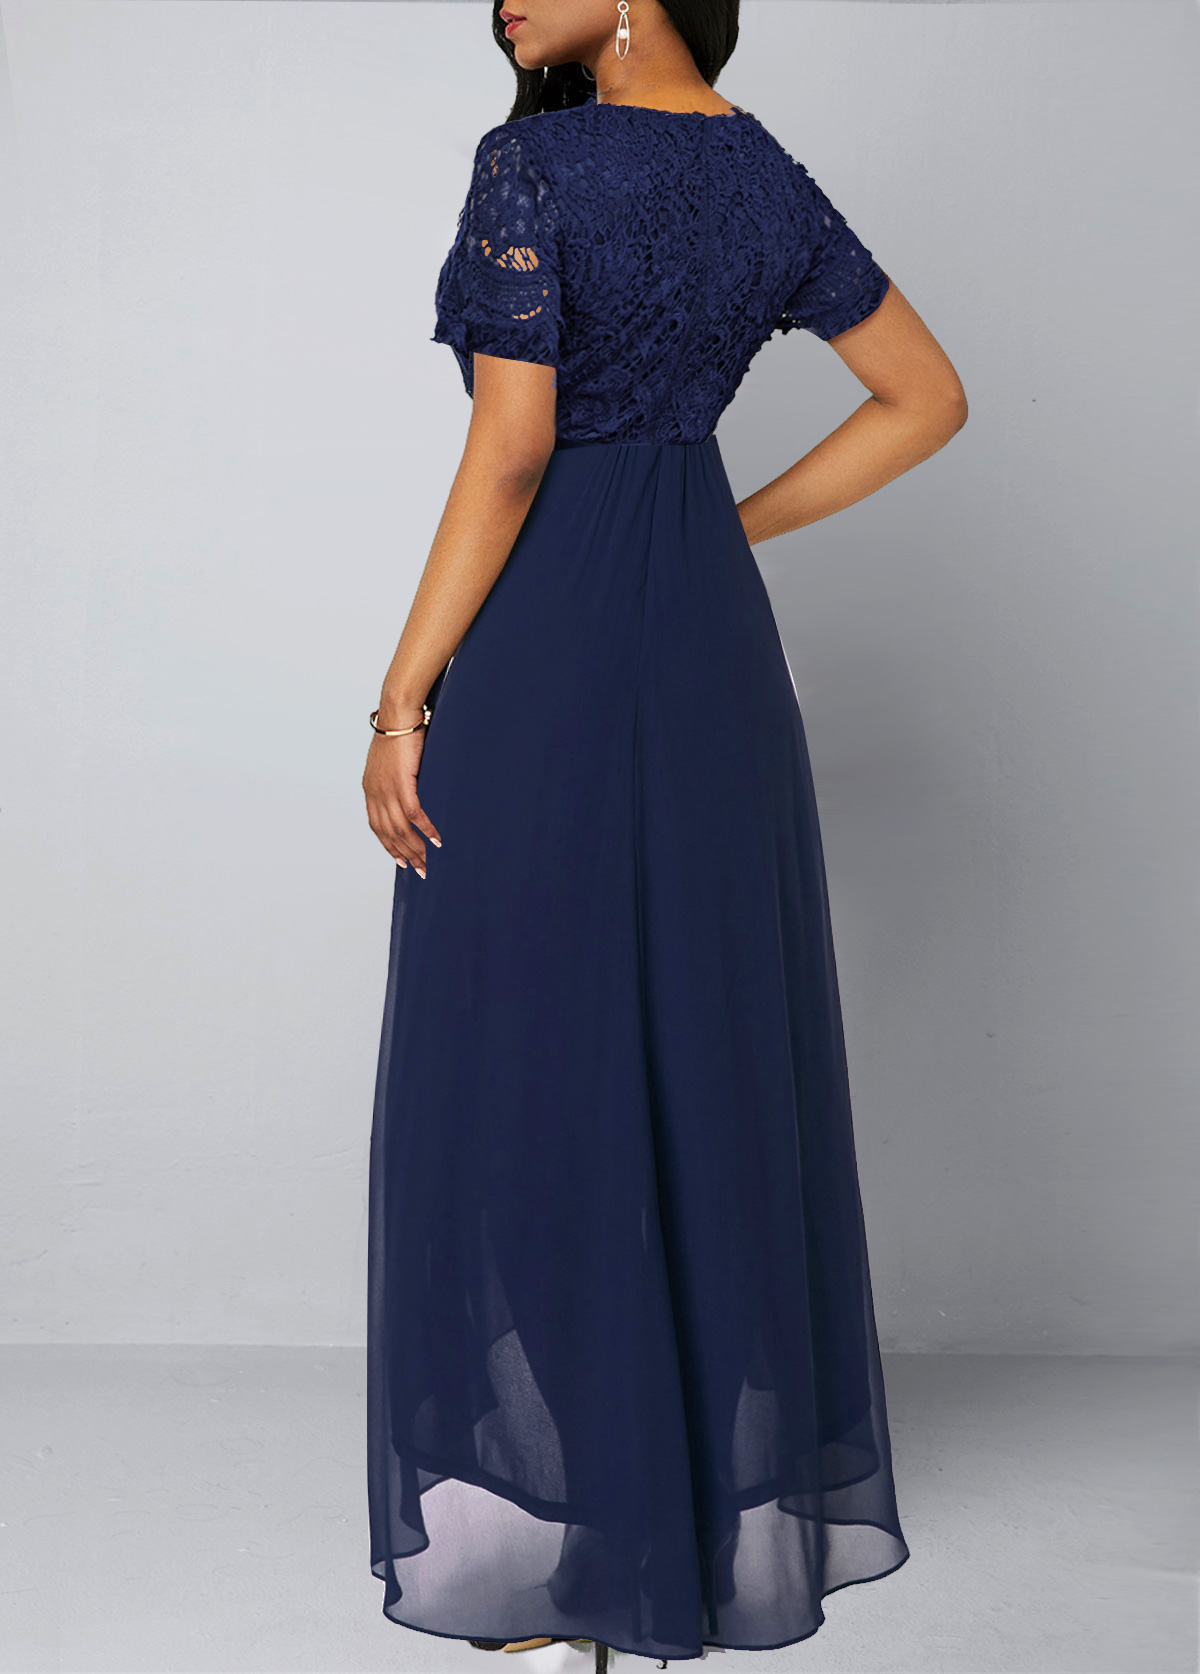 Chiffon Lace Stitching Asymmetric Hem Navy Blue Dress